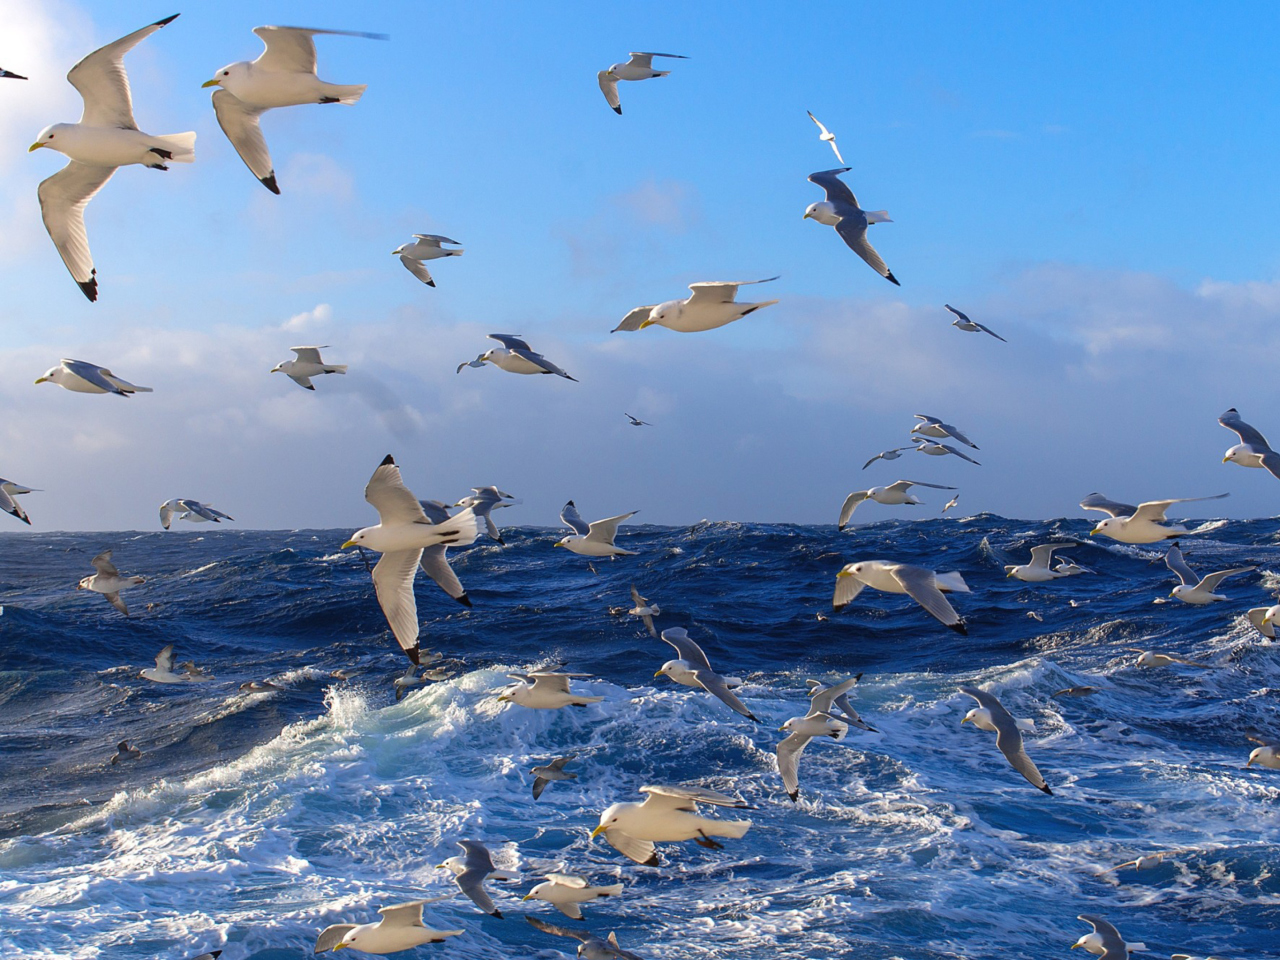 Обои Wavy Sea And Seagulls 1280x960